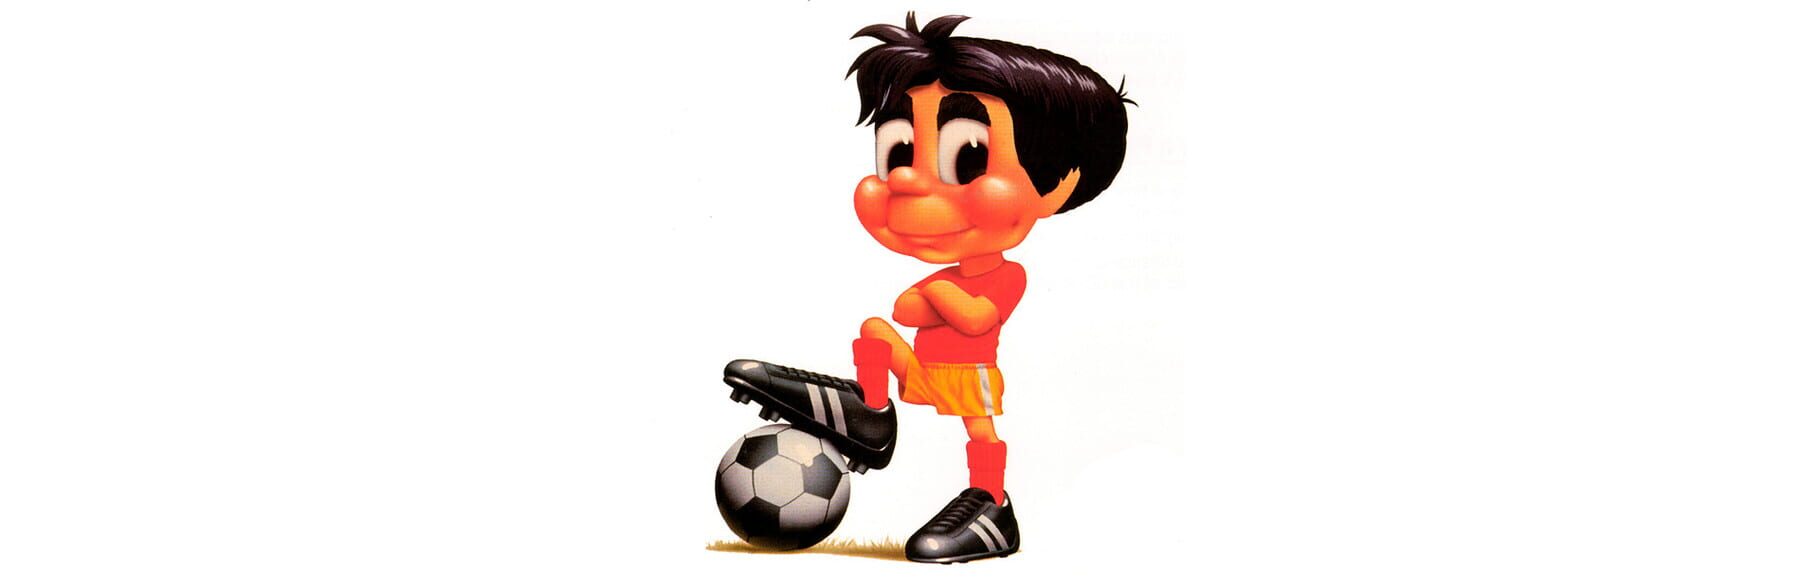 Arte - Soccer Kid